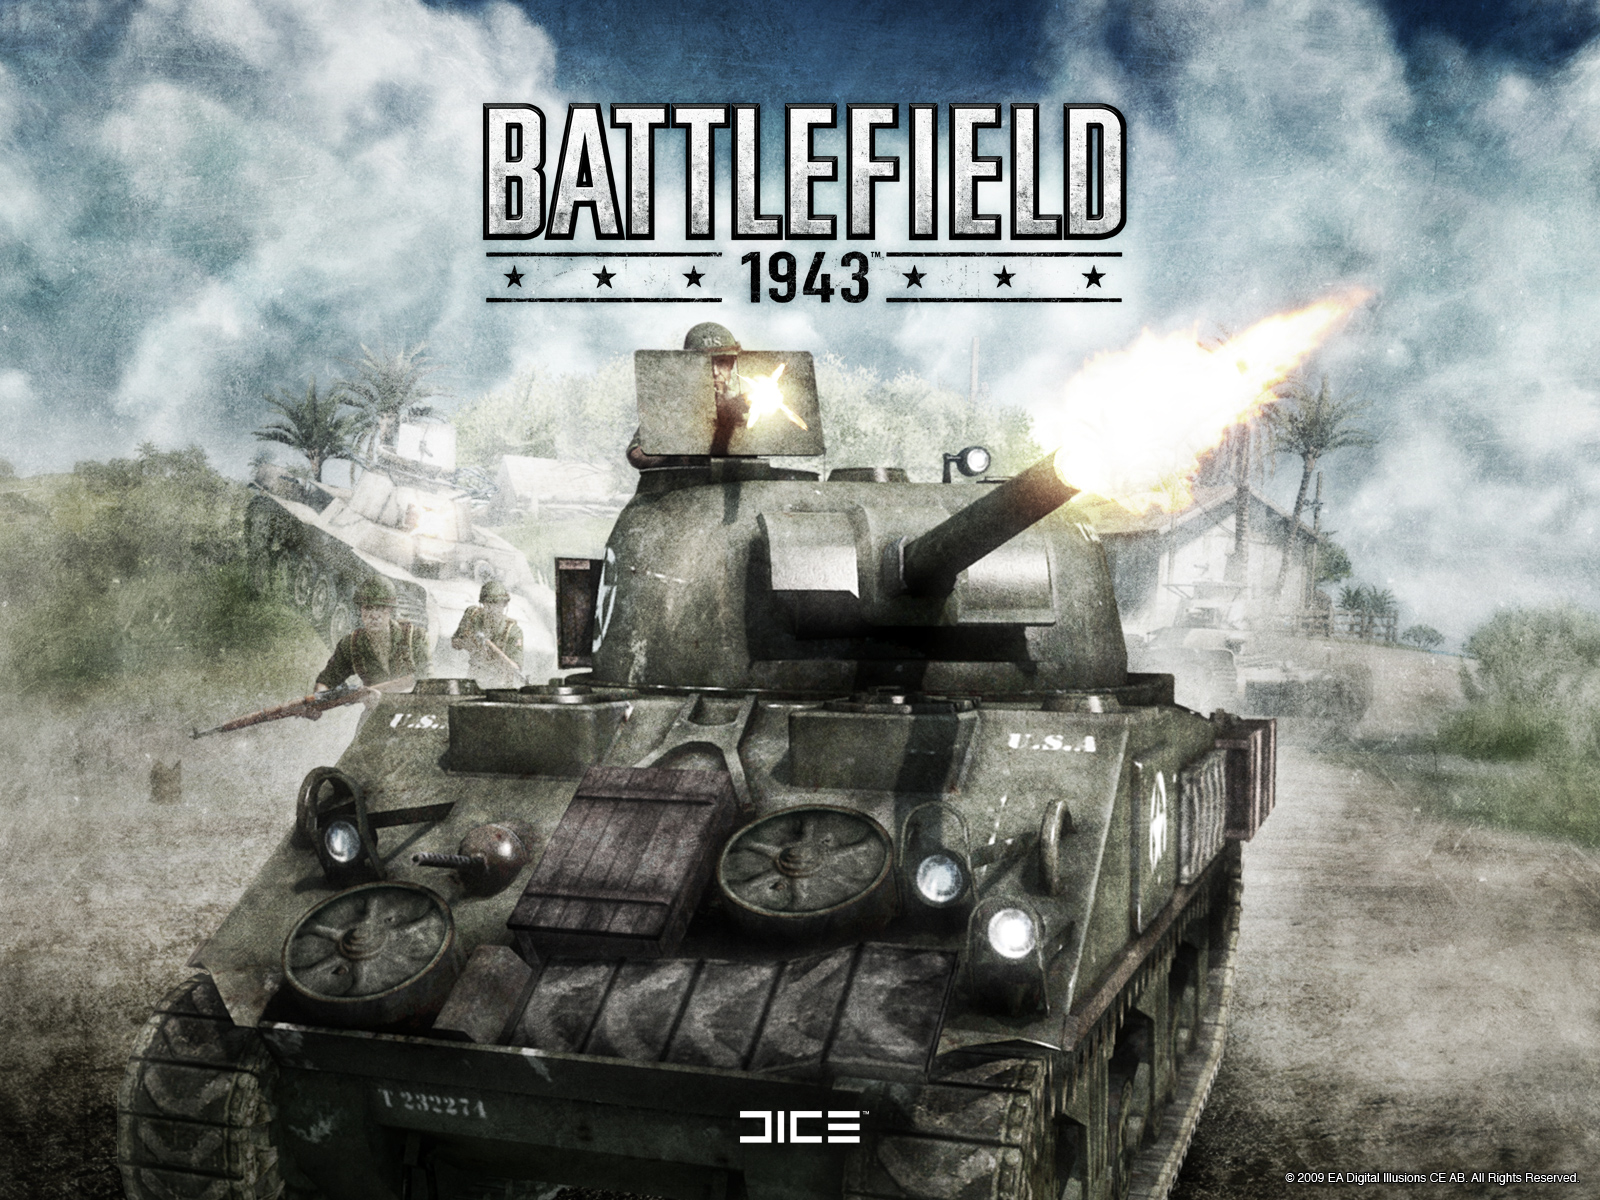 Juli - Battlefield 1943 Release